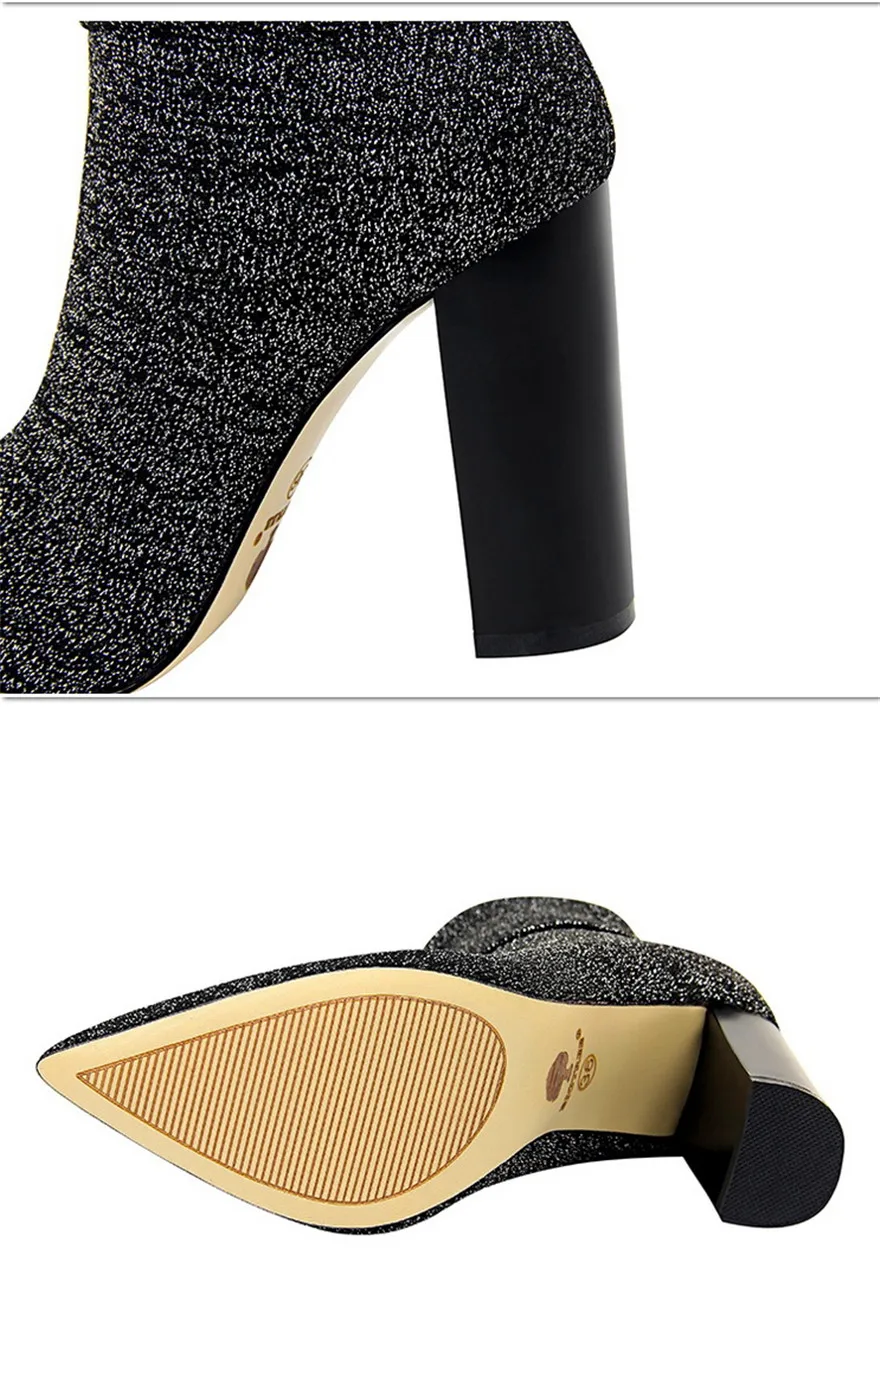 Осенние женские модные полусапожки; Мягкие вязаные женские сапоги на квадратном каблуке для вечеринок; женские туфли на высоком каблуке с острым носком; цвет черный, серебристый